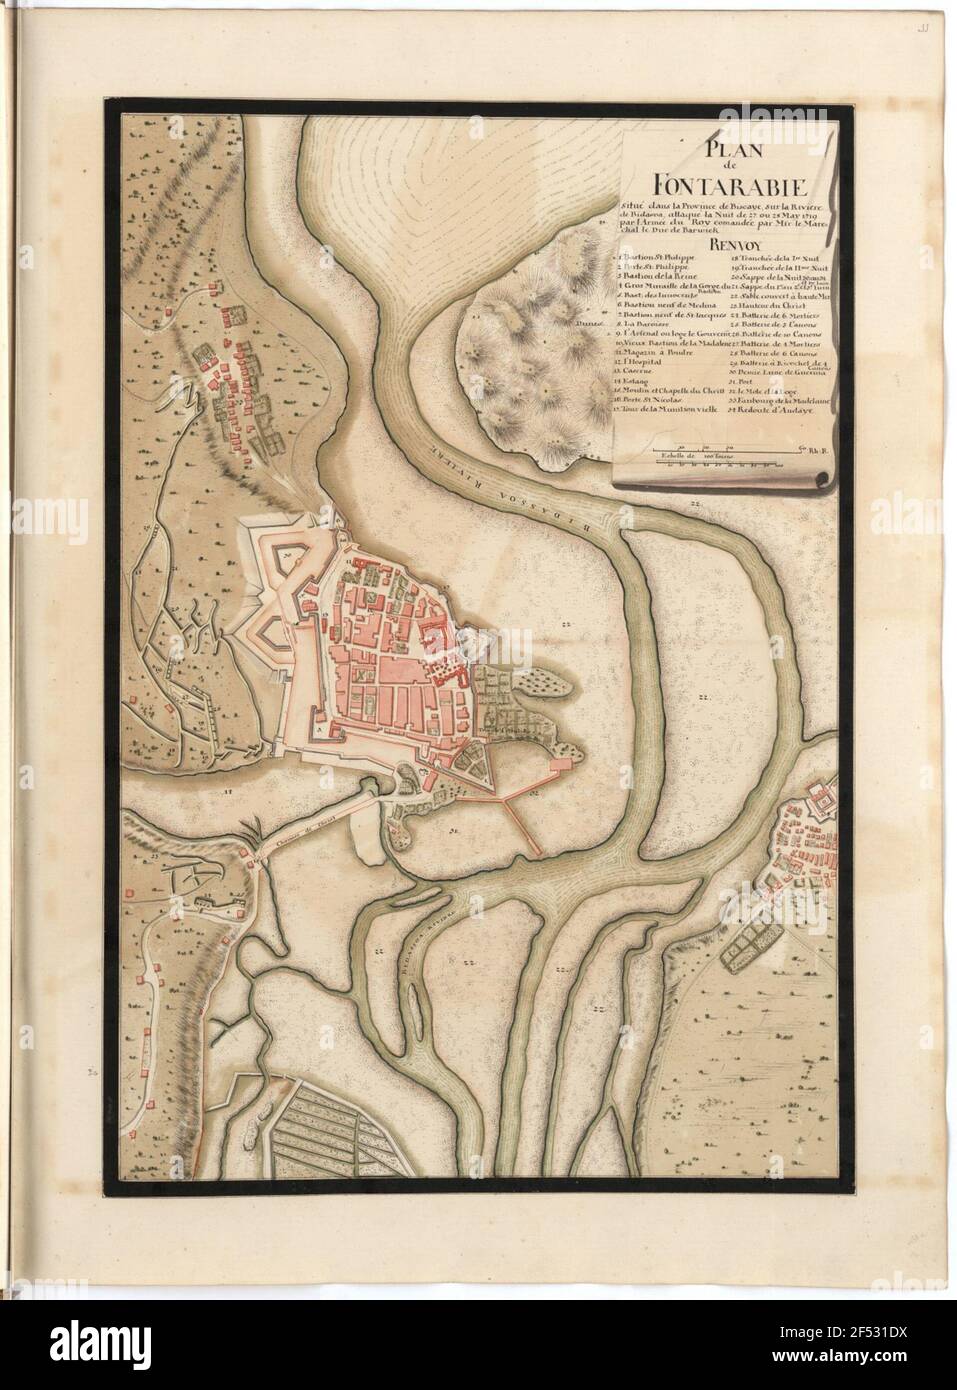 Plan de Fontarabie situato nella provincia di Biscaye, sulla Riviere de Bidasoa, attacca la notte di 27. O 28. Maggio 1719 dall'esercito del Roy Comandee di MSR: Il Marechal il duca di Barwick Foto Stock